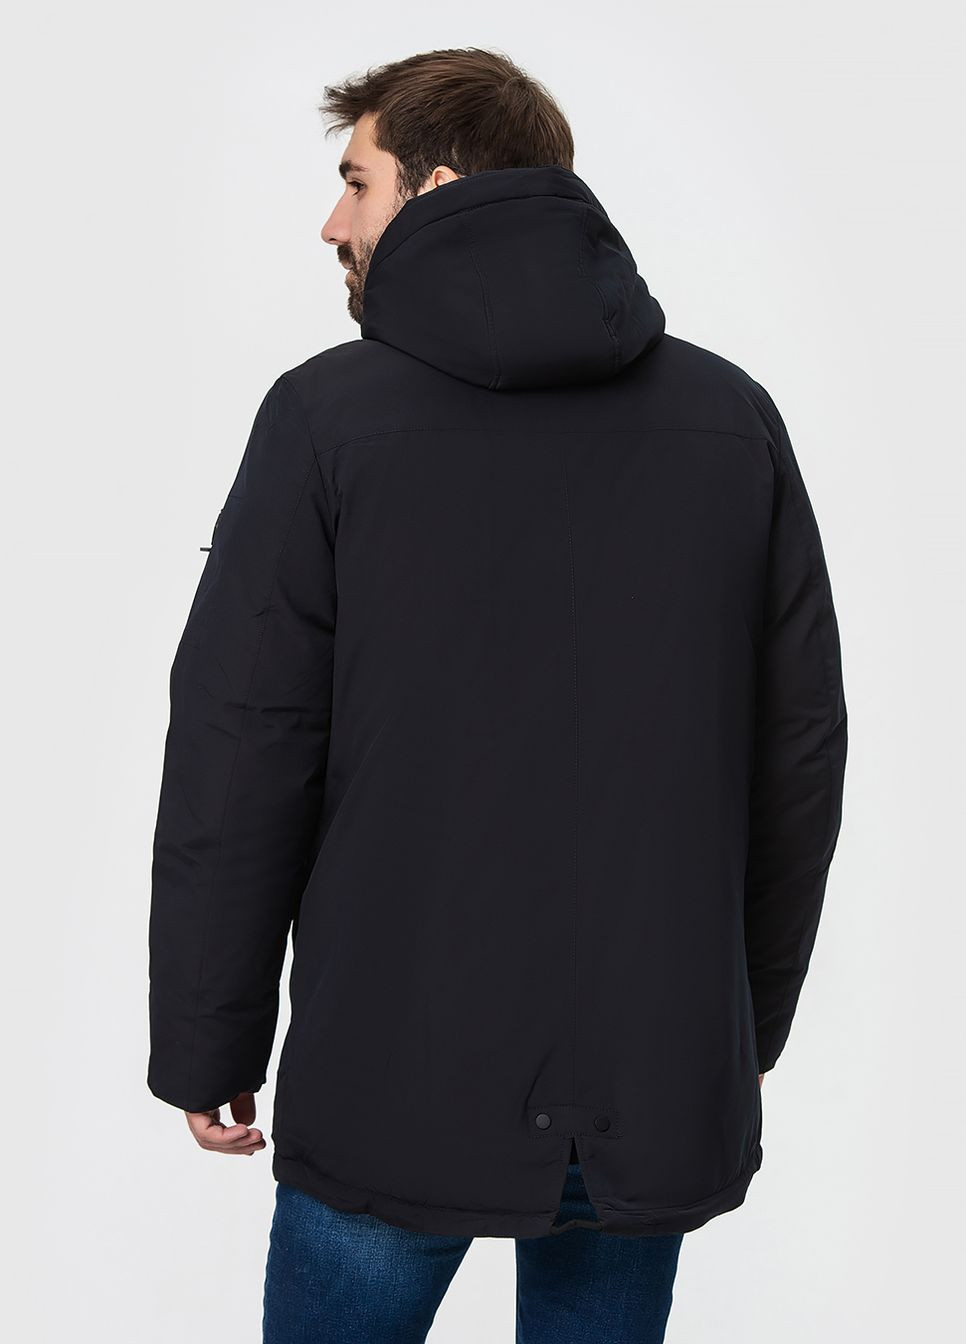 Черная зимняя зимняя куртка с капюшоном модель ZPJV 1275